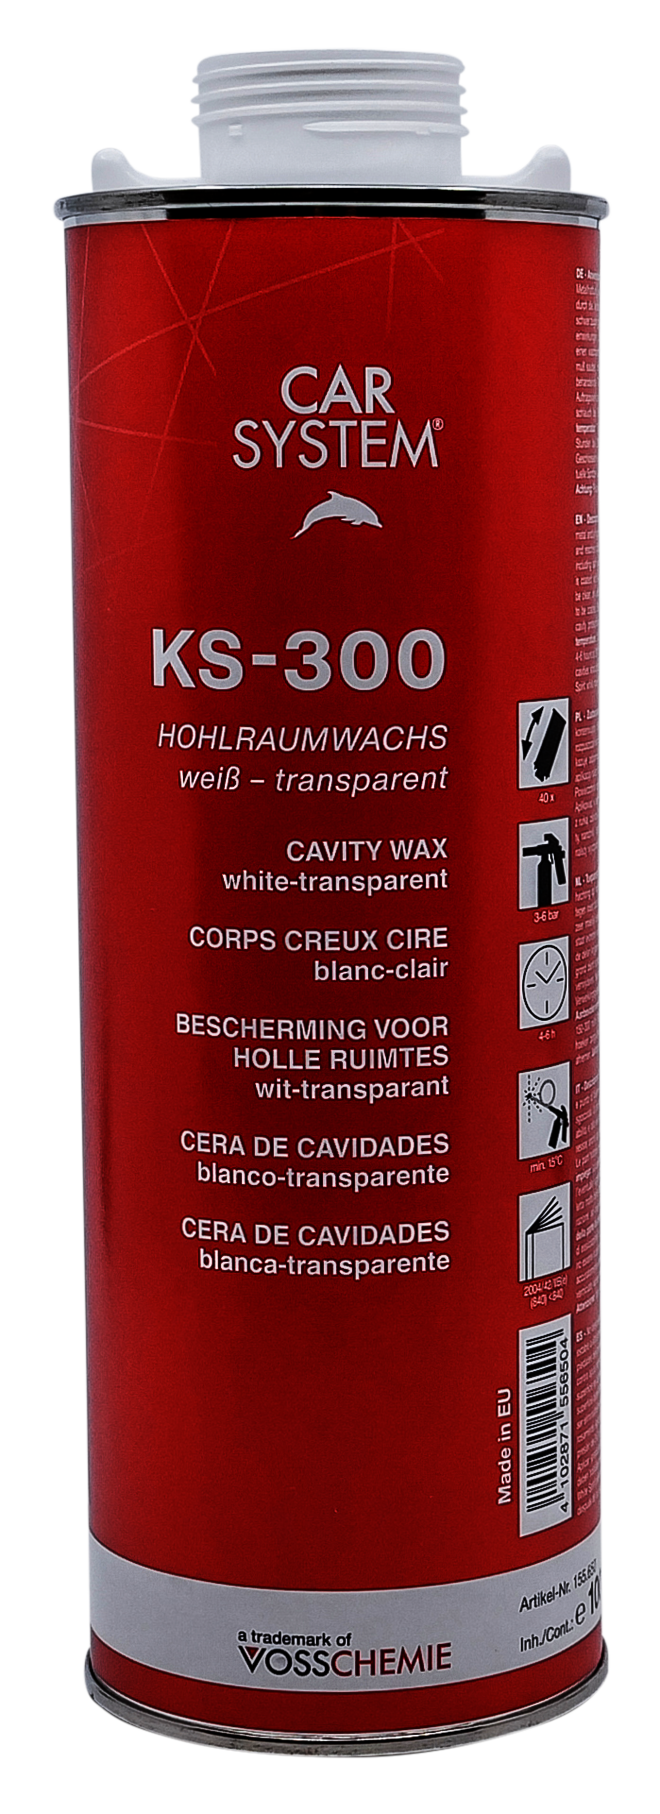 KS-300 Hohlraumwachs - CARSYSTEM